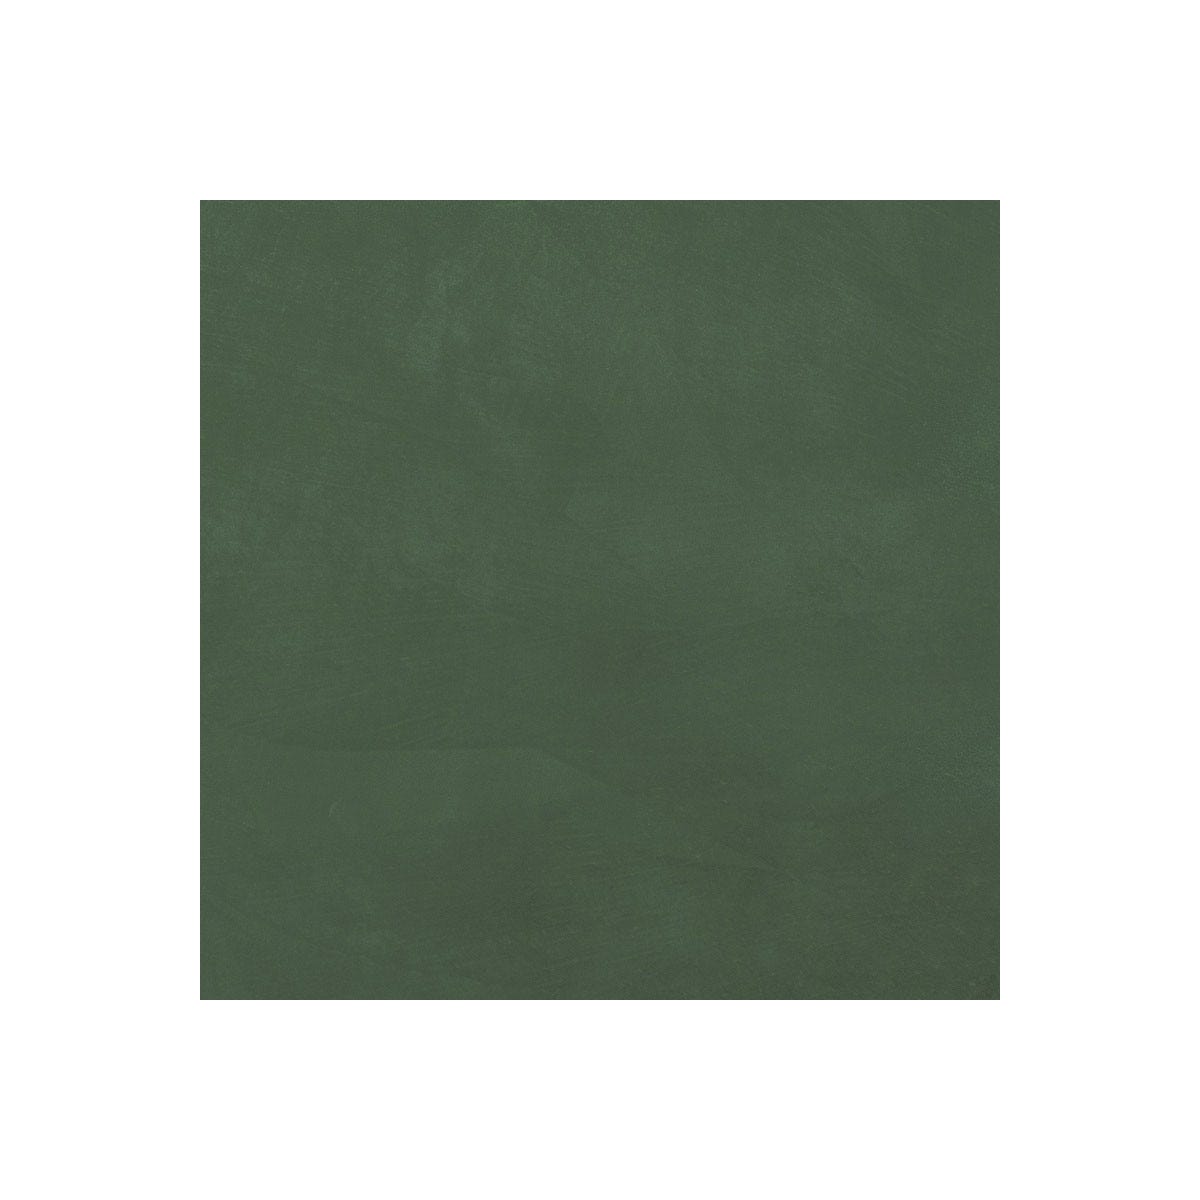 Béton Ciré Sol en - Primaire et vernis de finition inclus - 5 m² (en 2 couches) - Carambole Vert - ARCANE INDUSTRIES 1